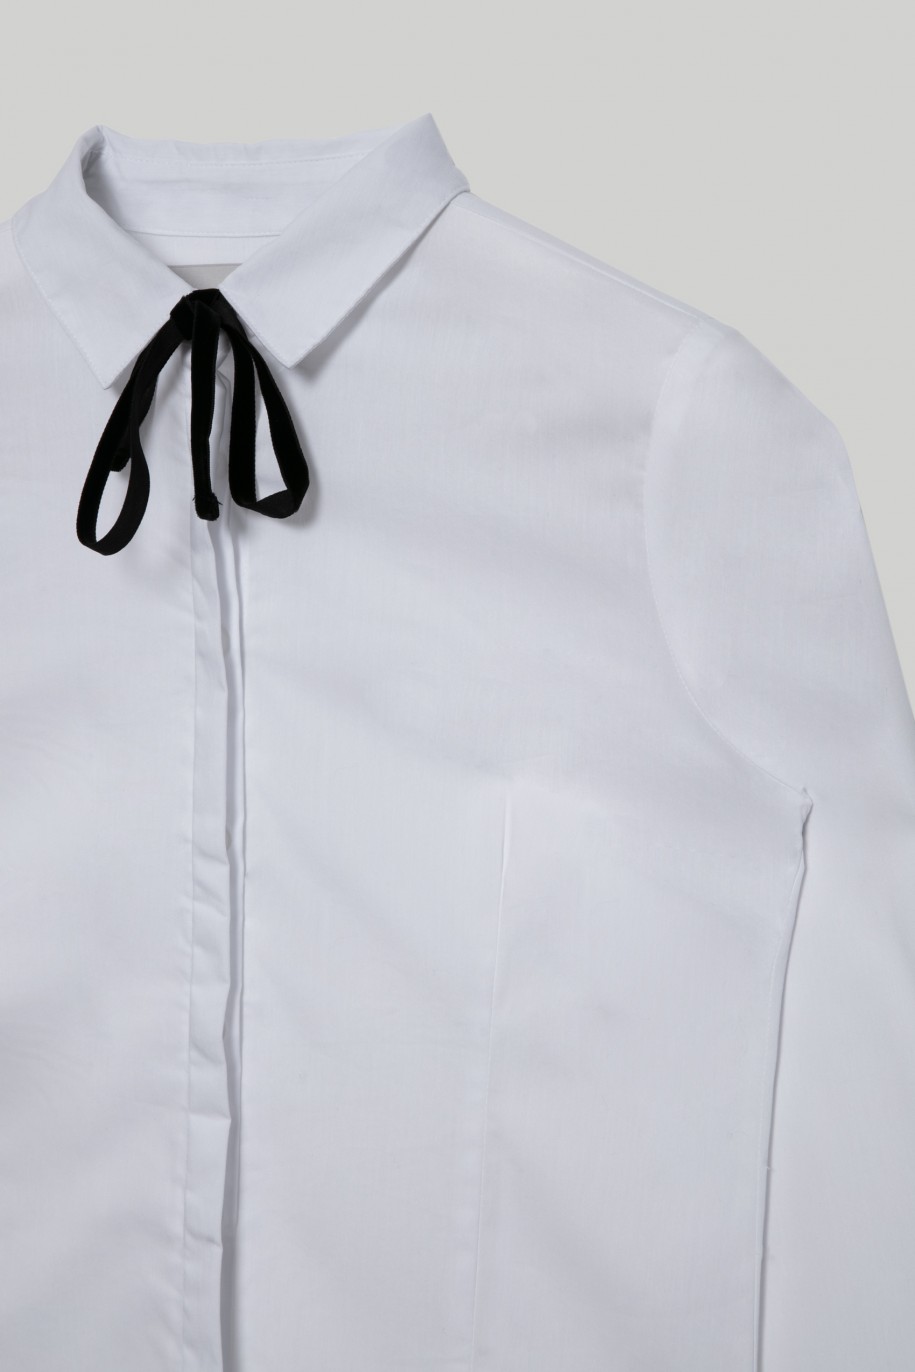 Biała elegancka koszula z ozdobną czarną tasiemką dla dziewczyny - 29416